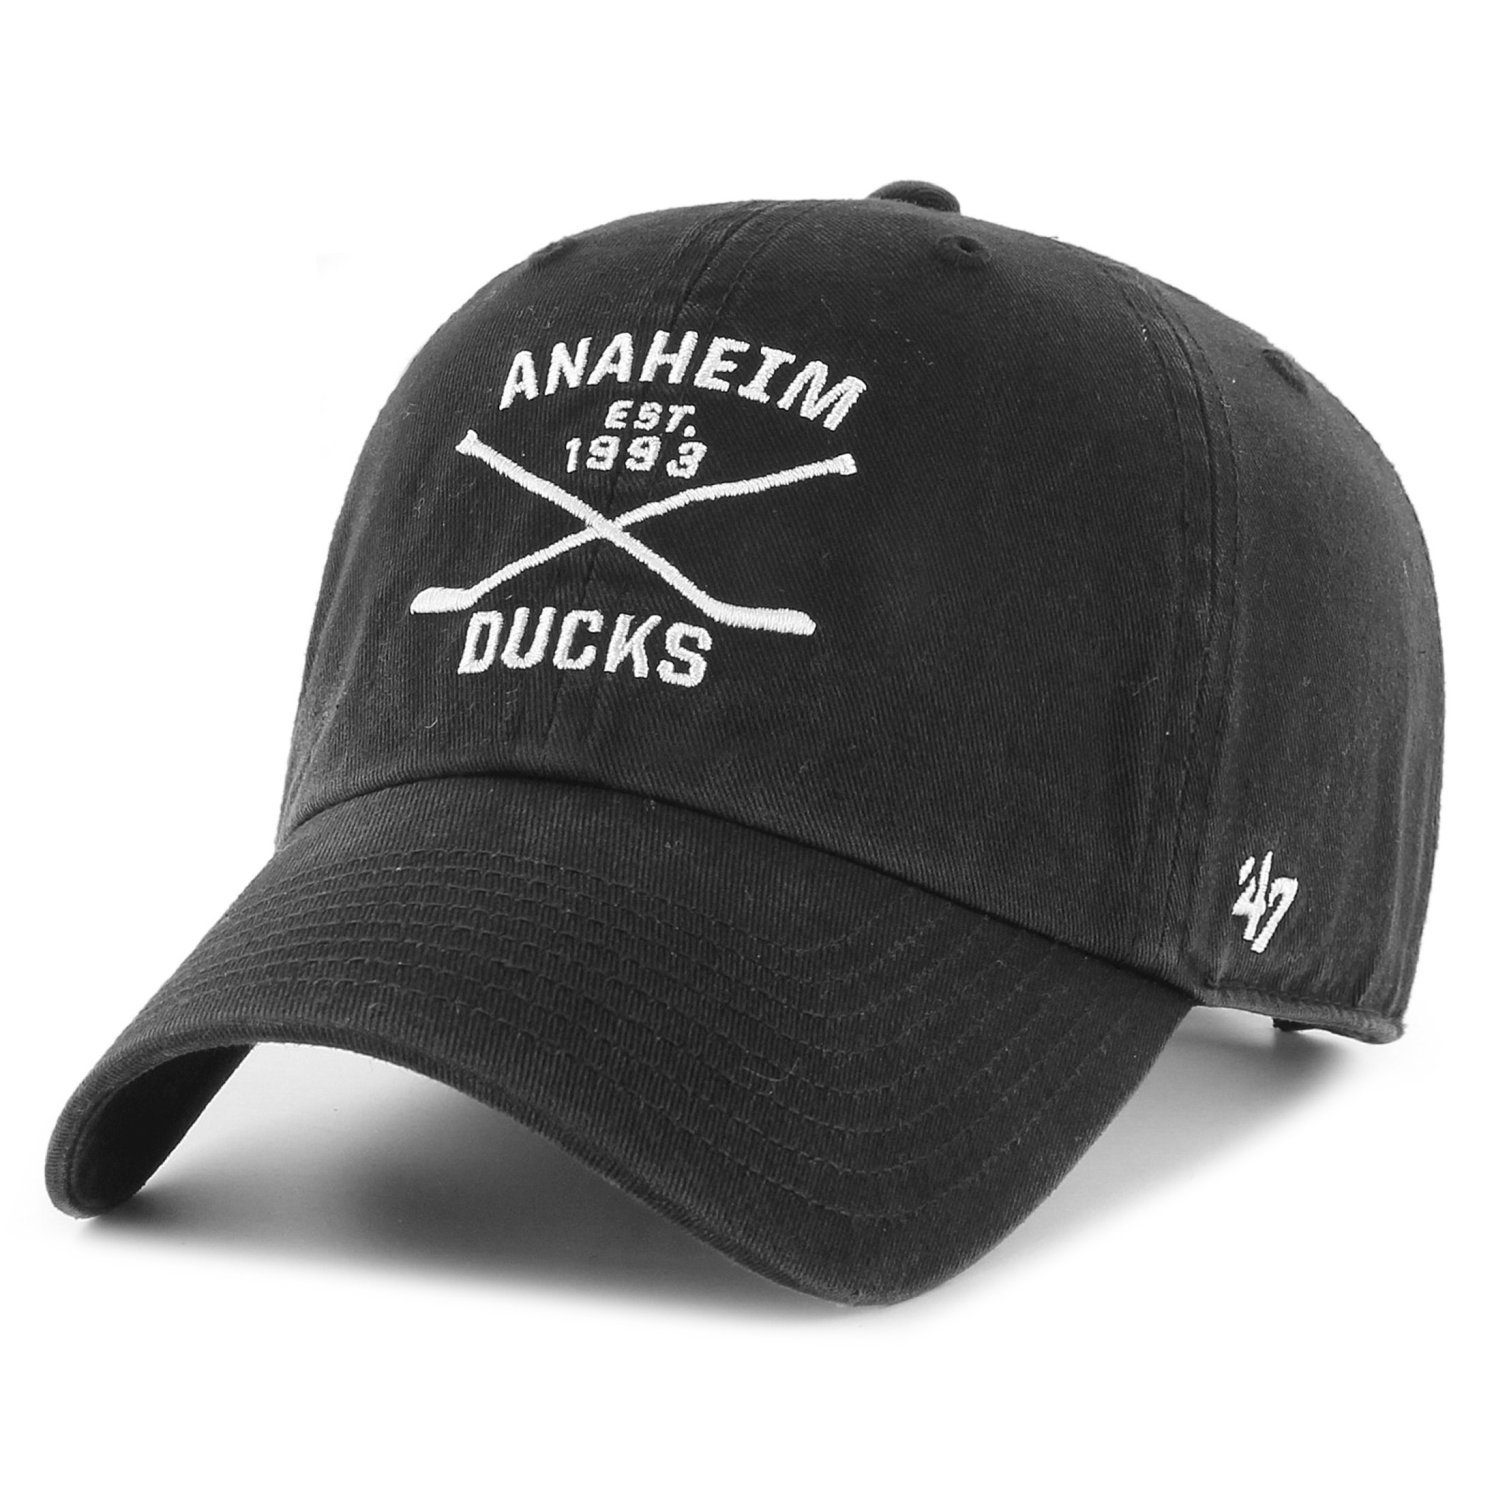 '47 Brand Baseball Cap AXIS Anaheim Ducks